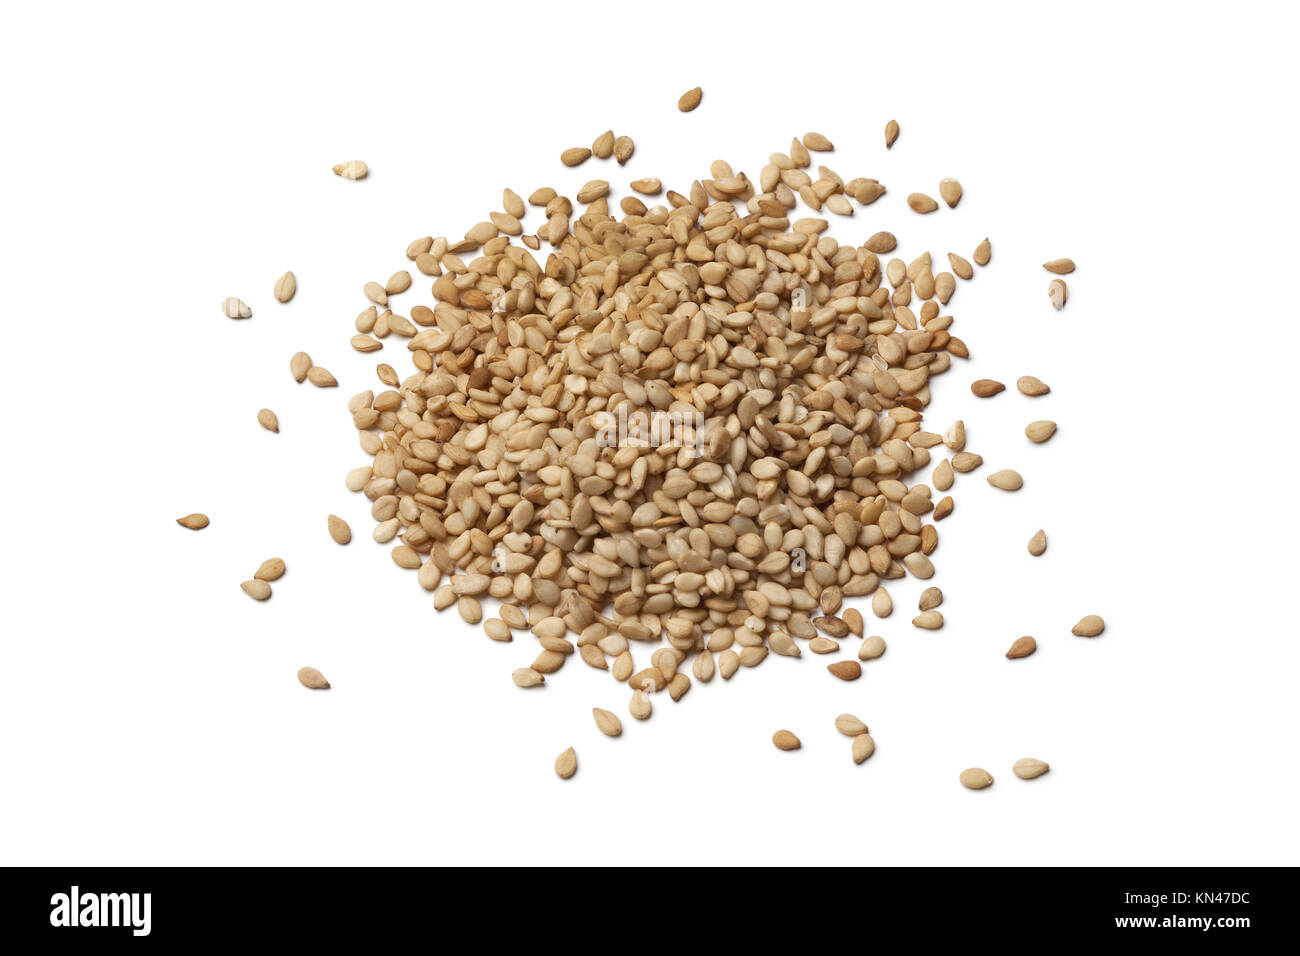 Roasted sesame seeds on white background. Stock Photo